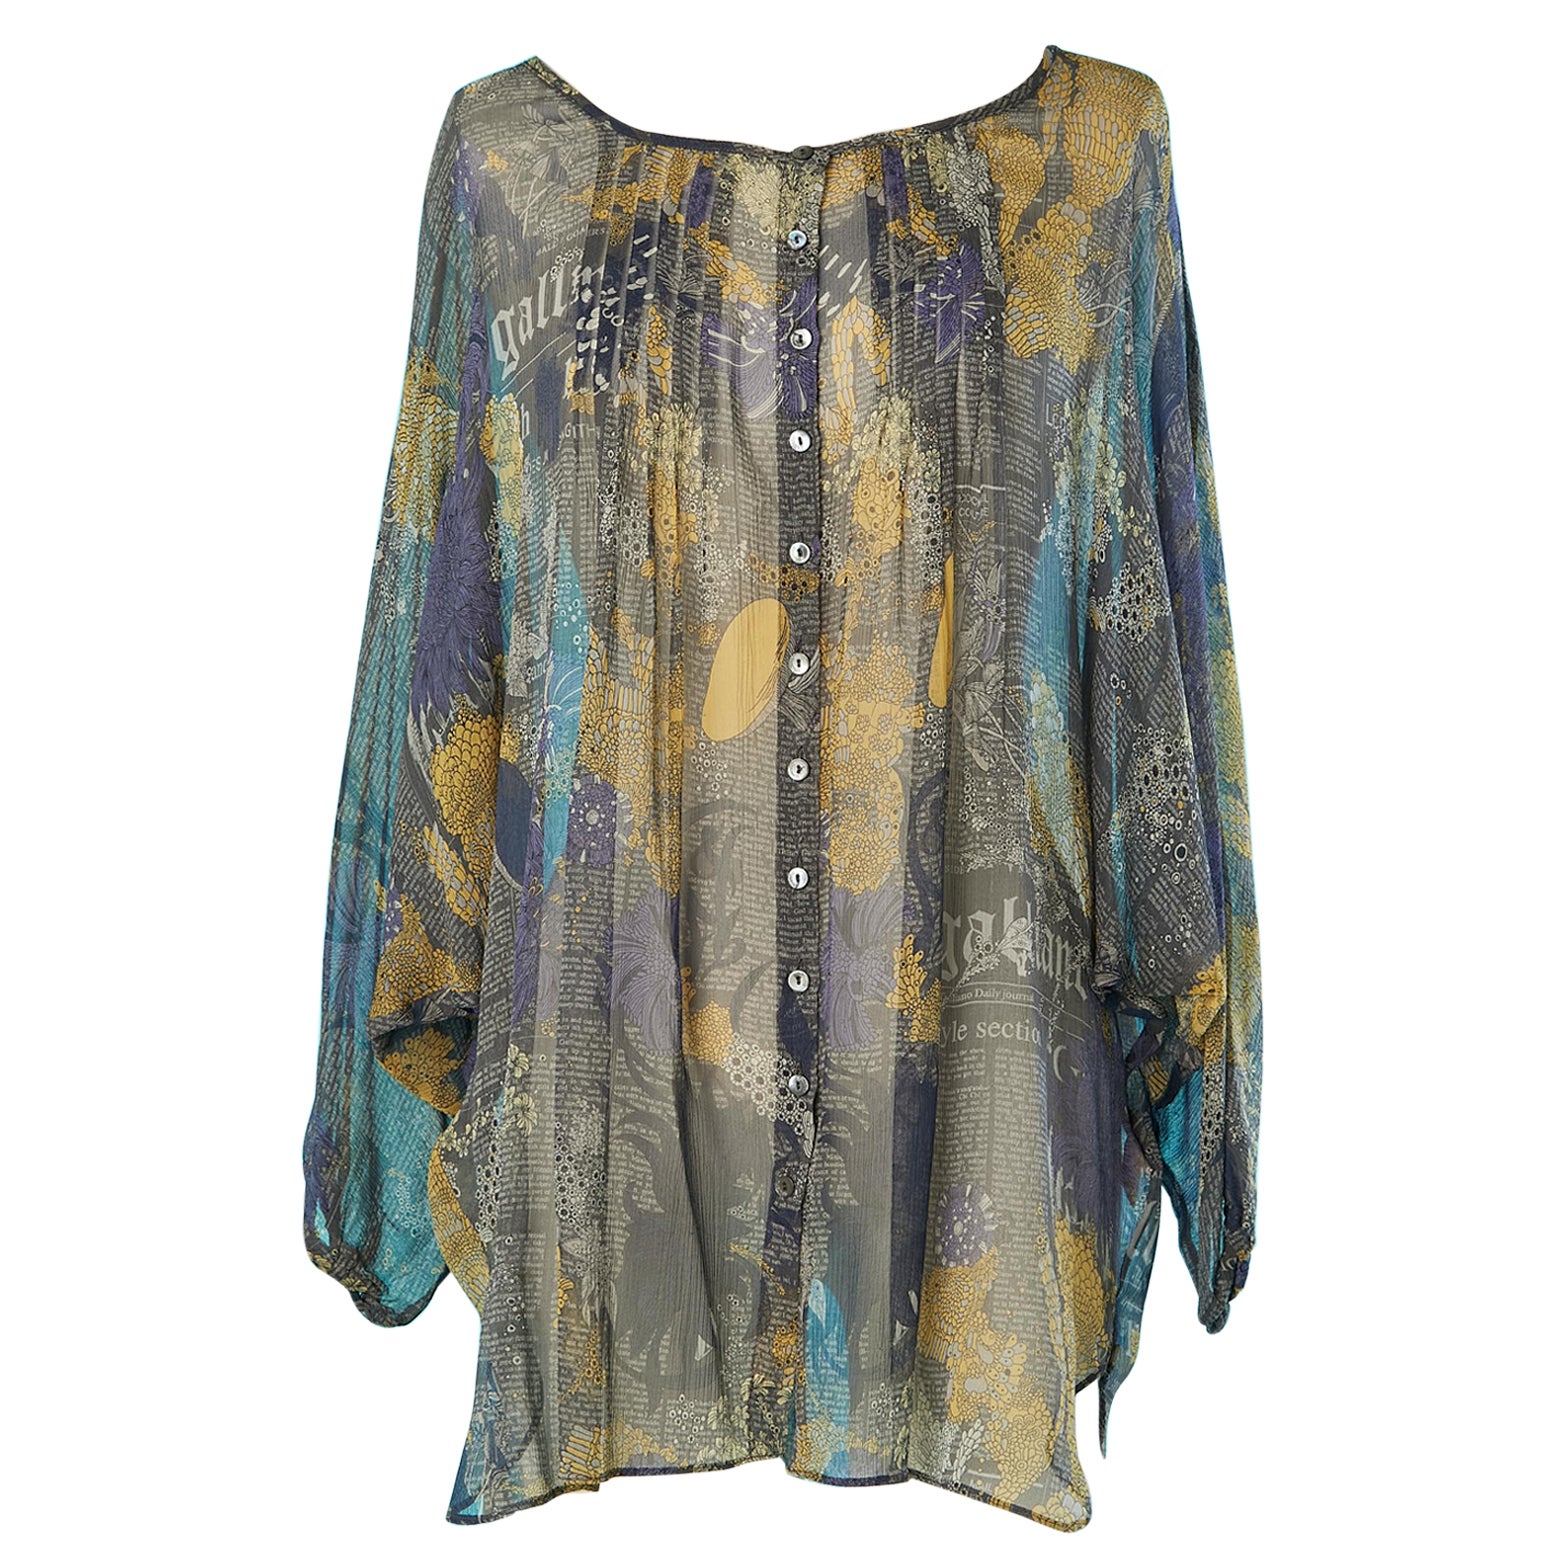 Silk chiffon printed blouse John Galliano 